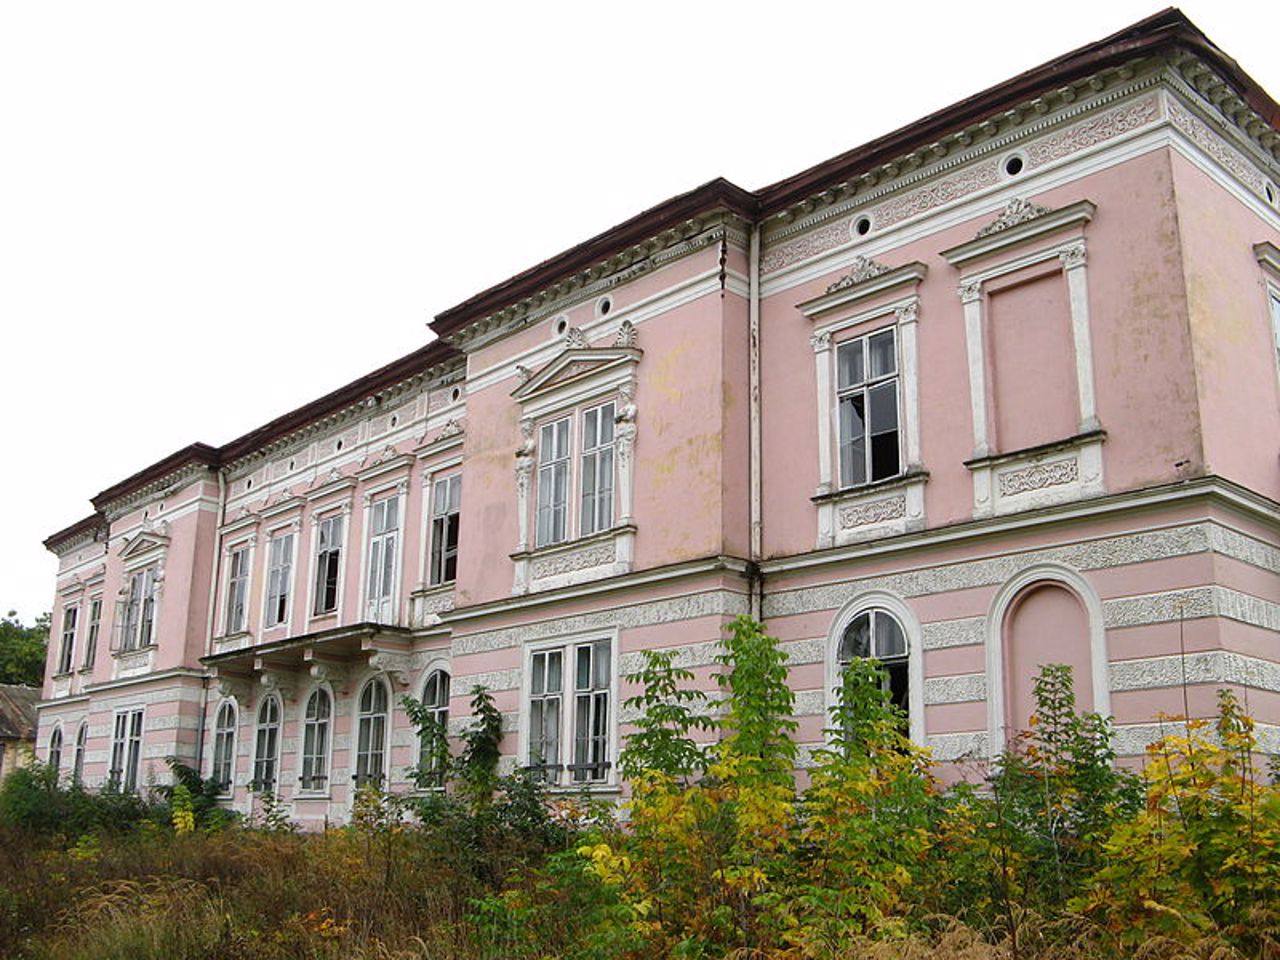 Badeni Palace, Busk